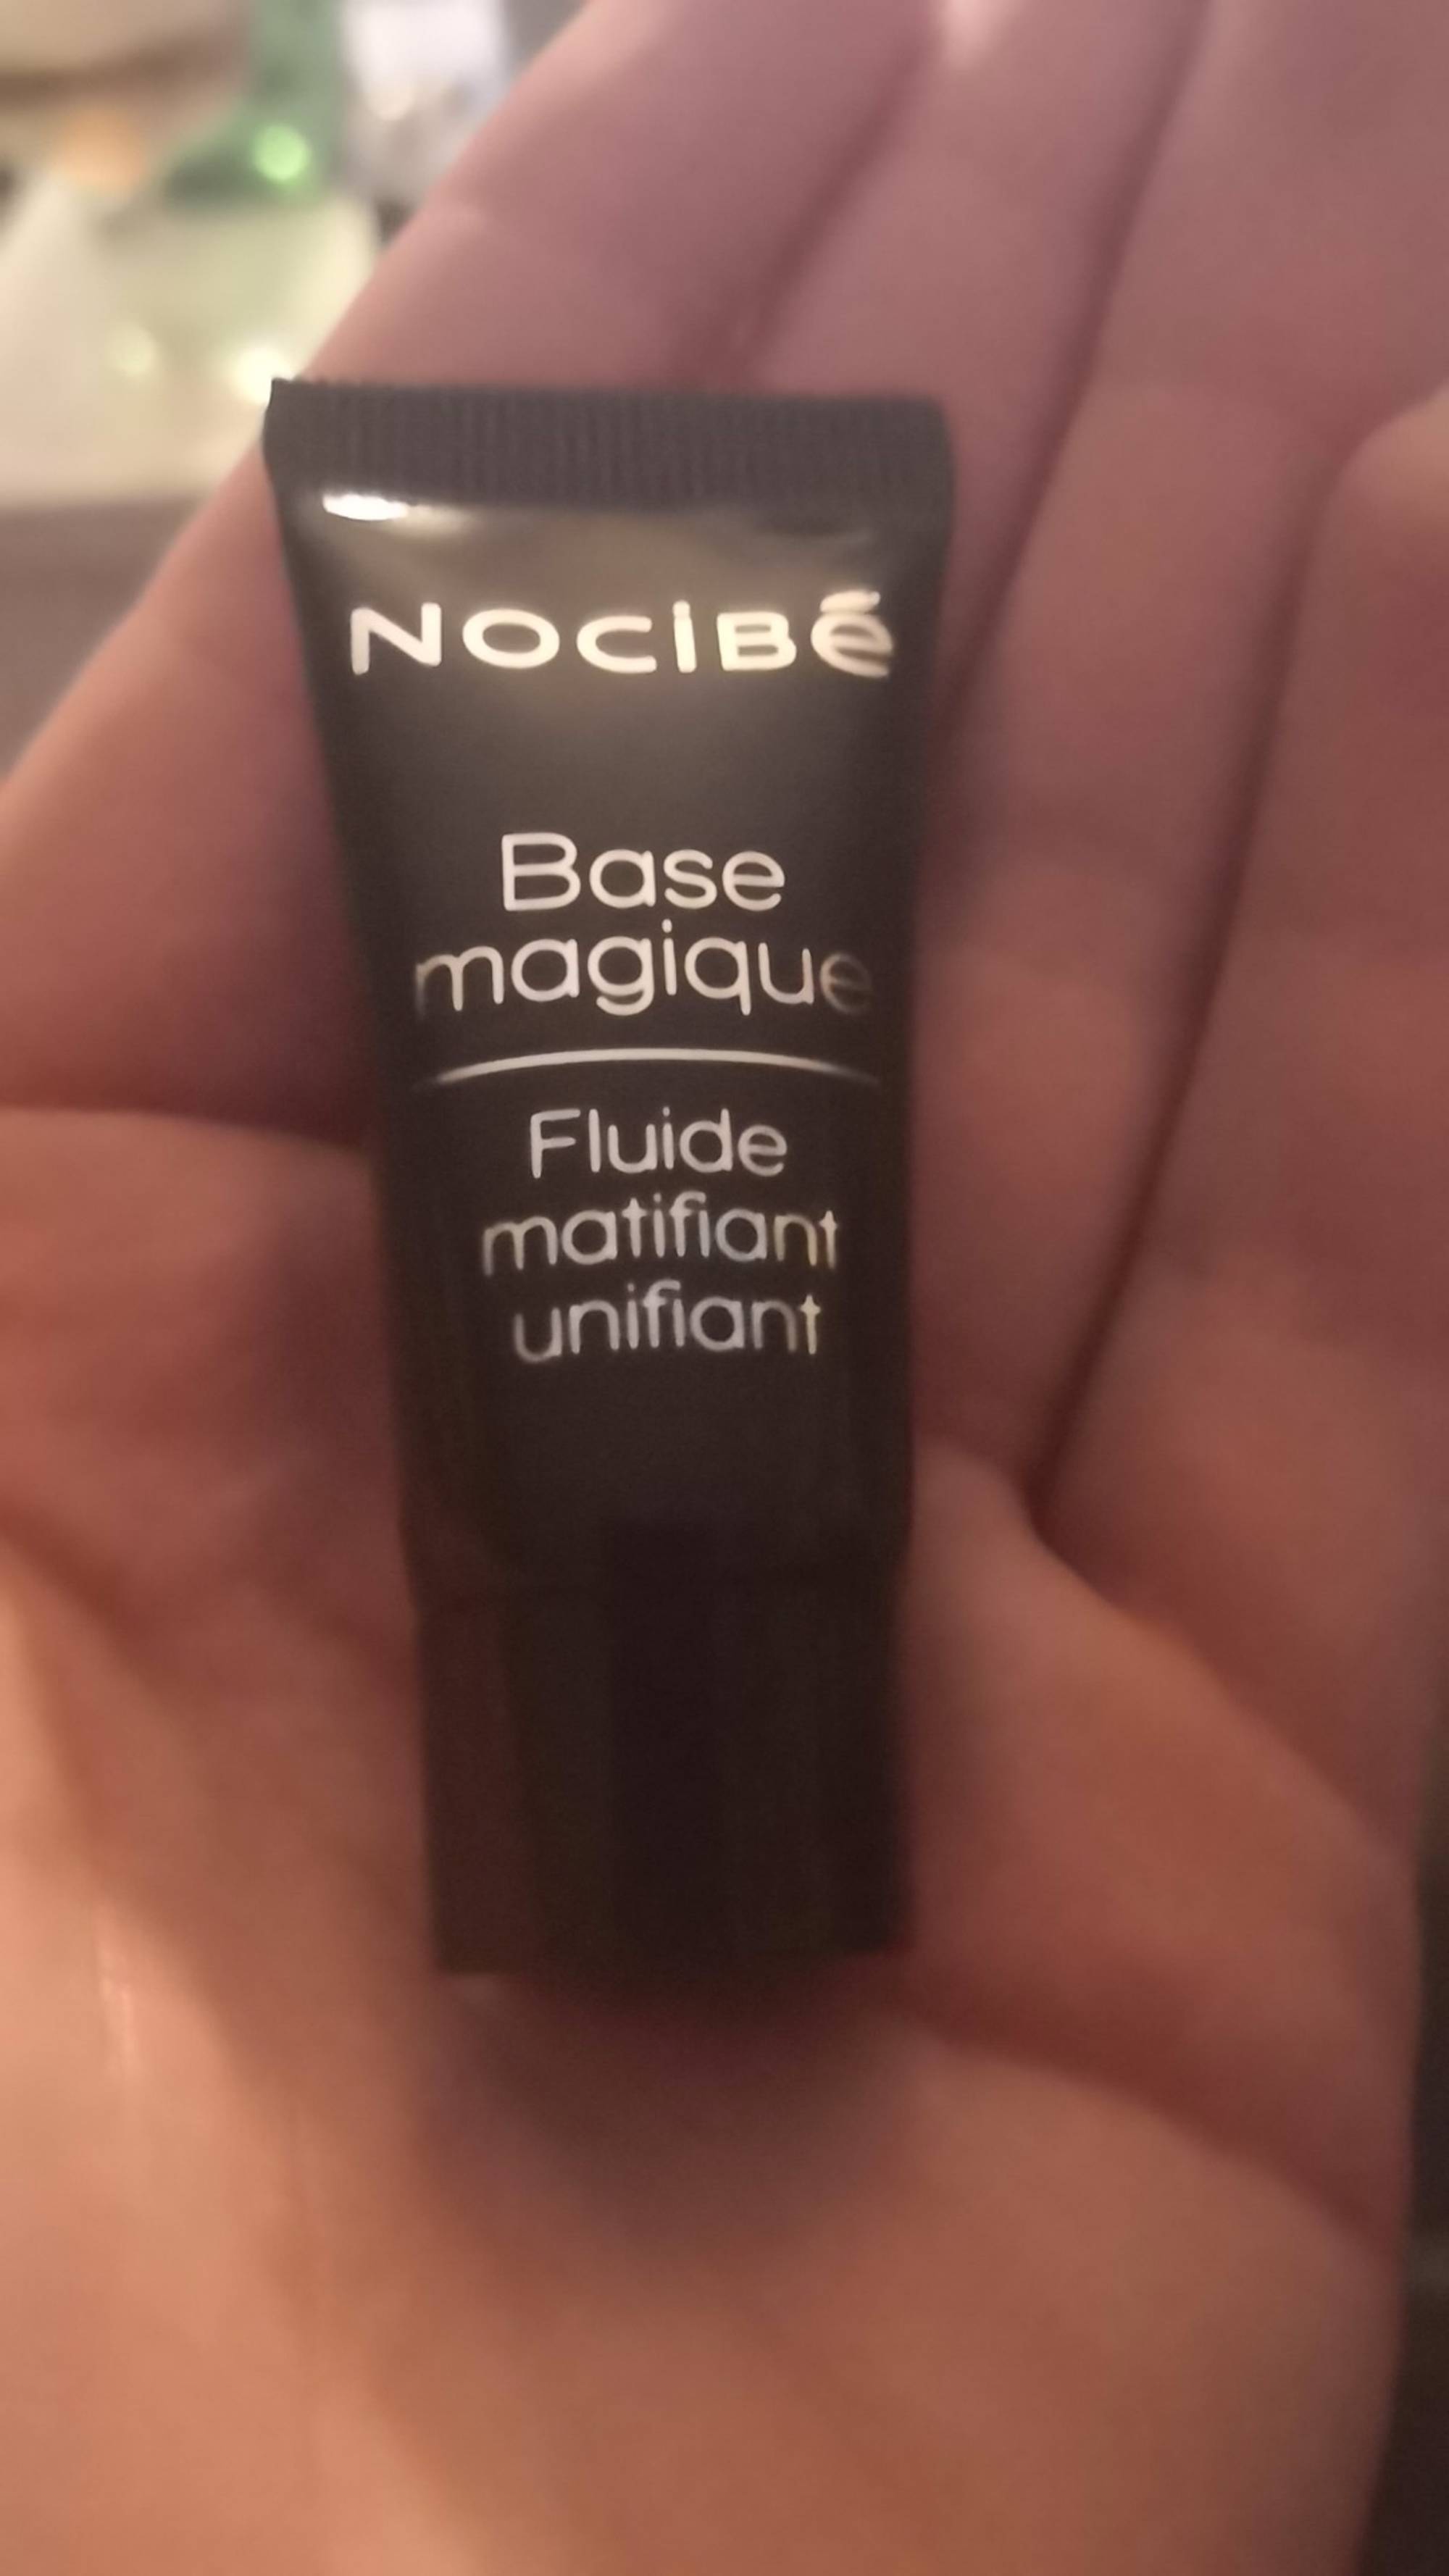 NOCIBÉ - Base magique - Fluide matifiant unifiant